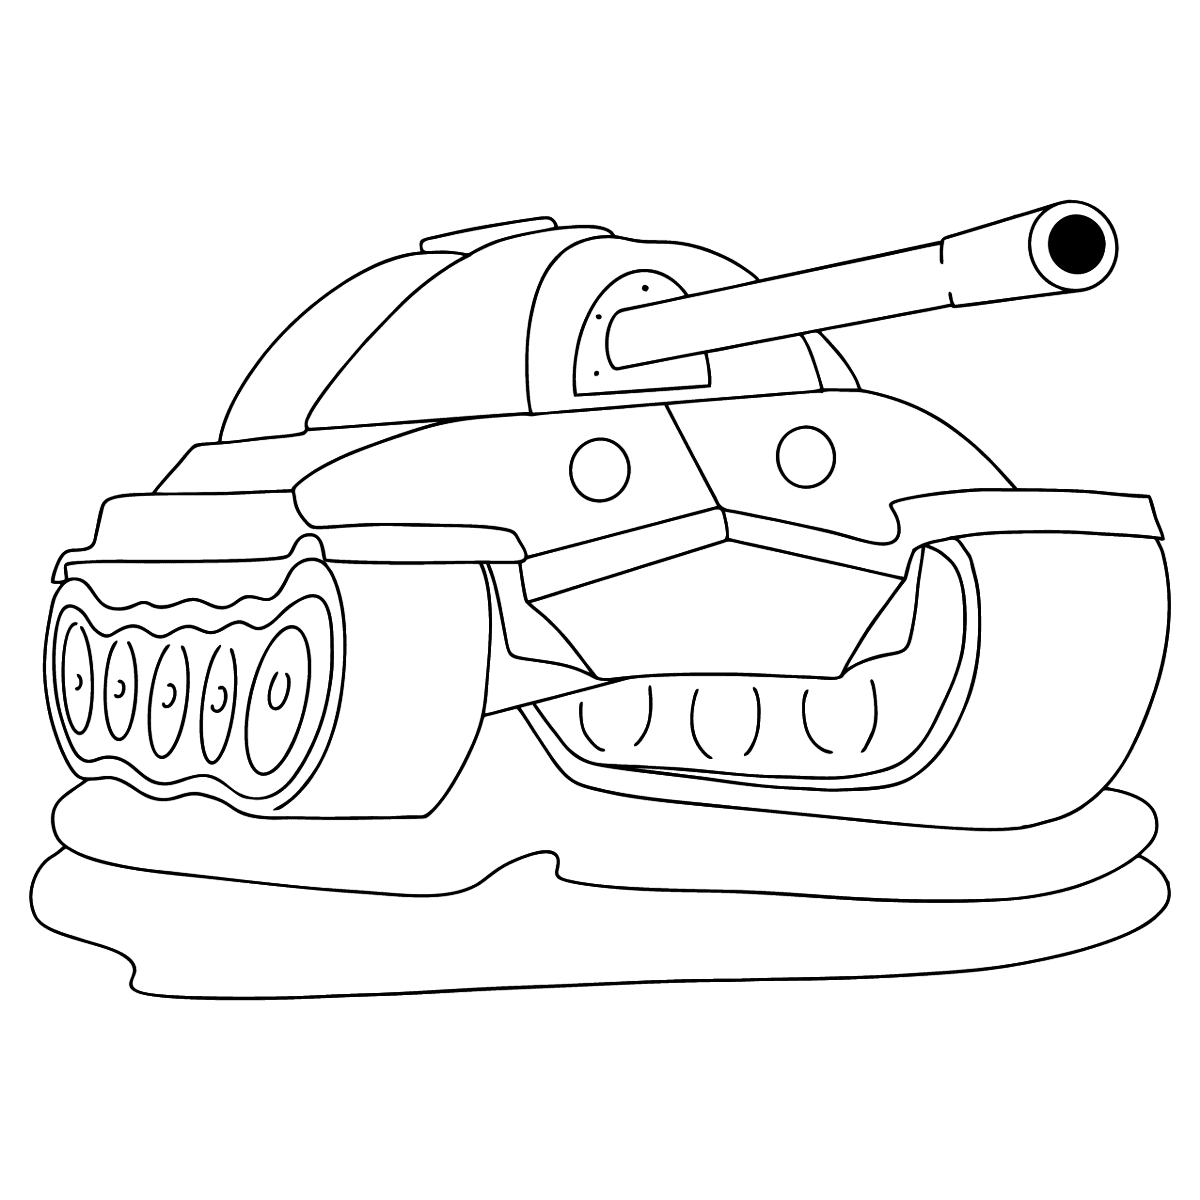 Раскраска танк. Раскраска танка ИС 7. Раскраски танки ИС 7. Танк мультяшный. Ису раскраска